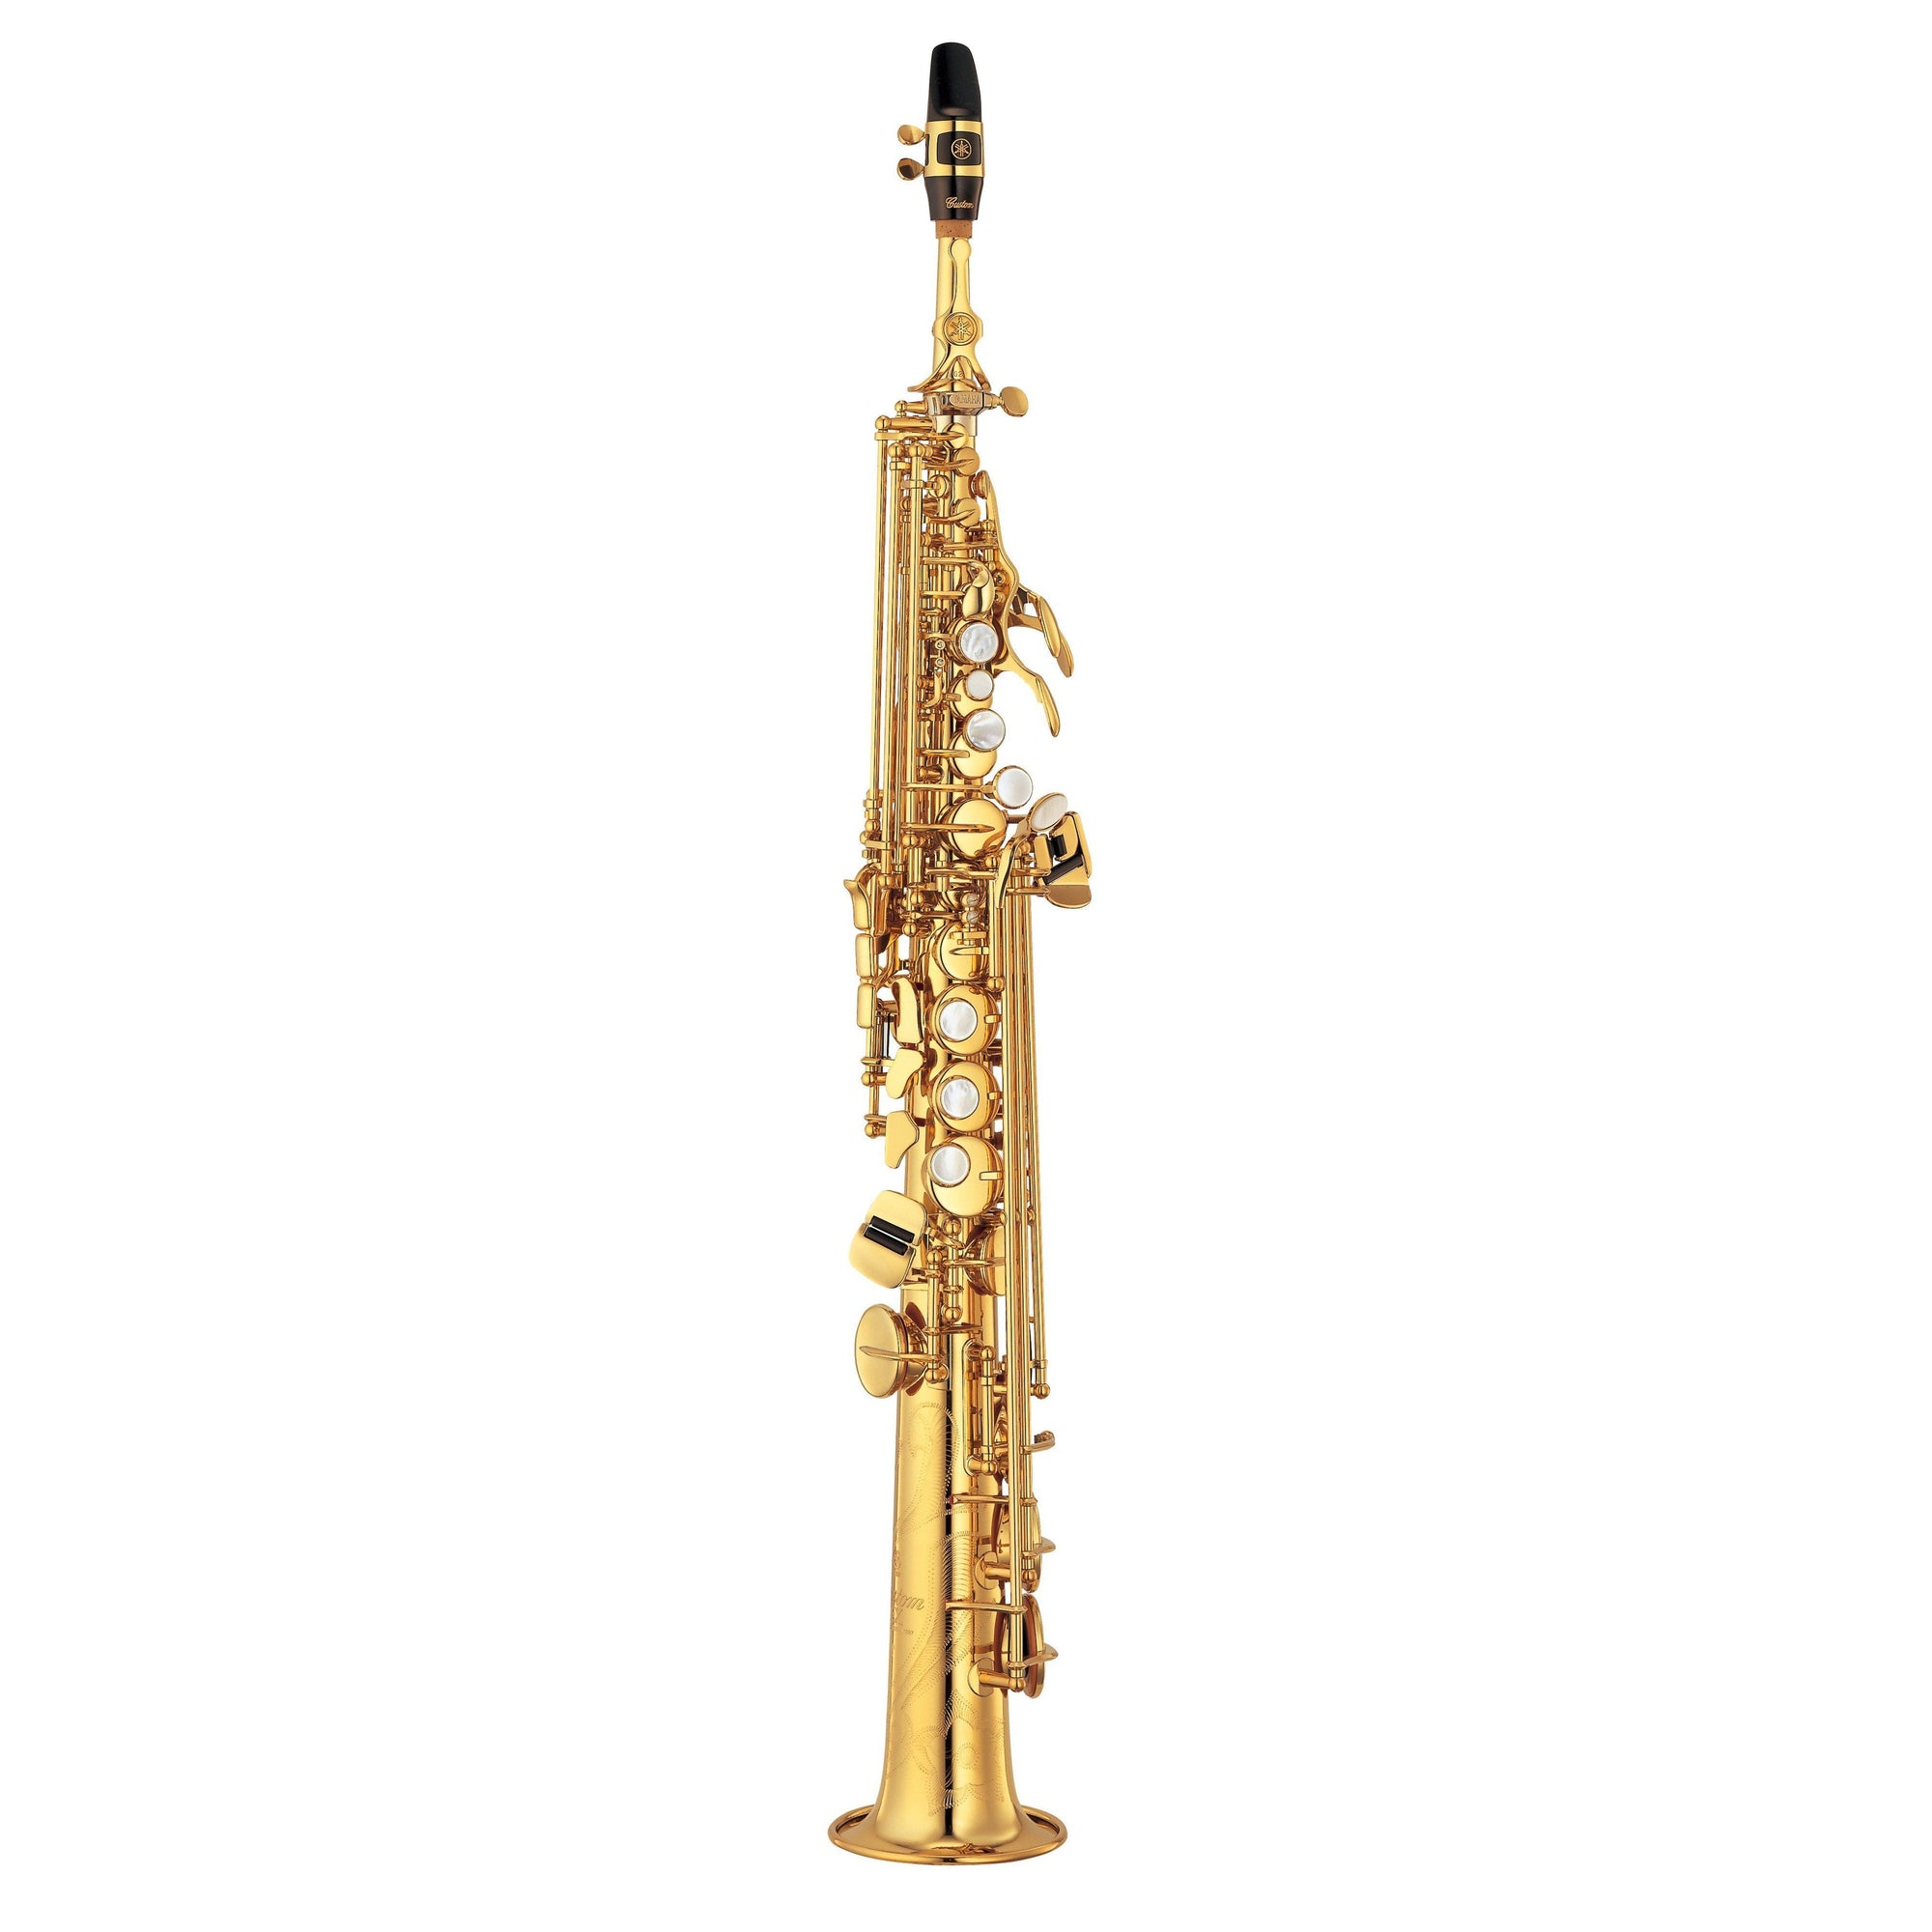 Yamaha - YSS-875EXHGG - Custom EX Soprano Saxophone-Saxophone-Yamaha-Music Elements